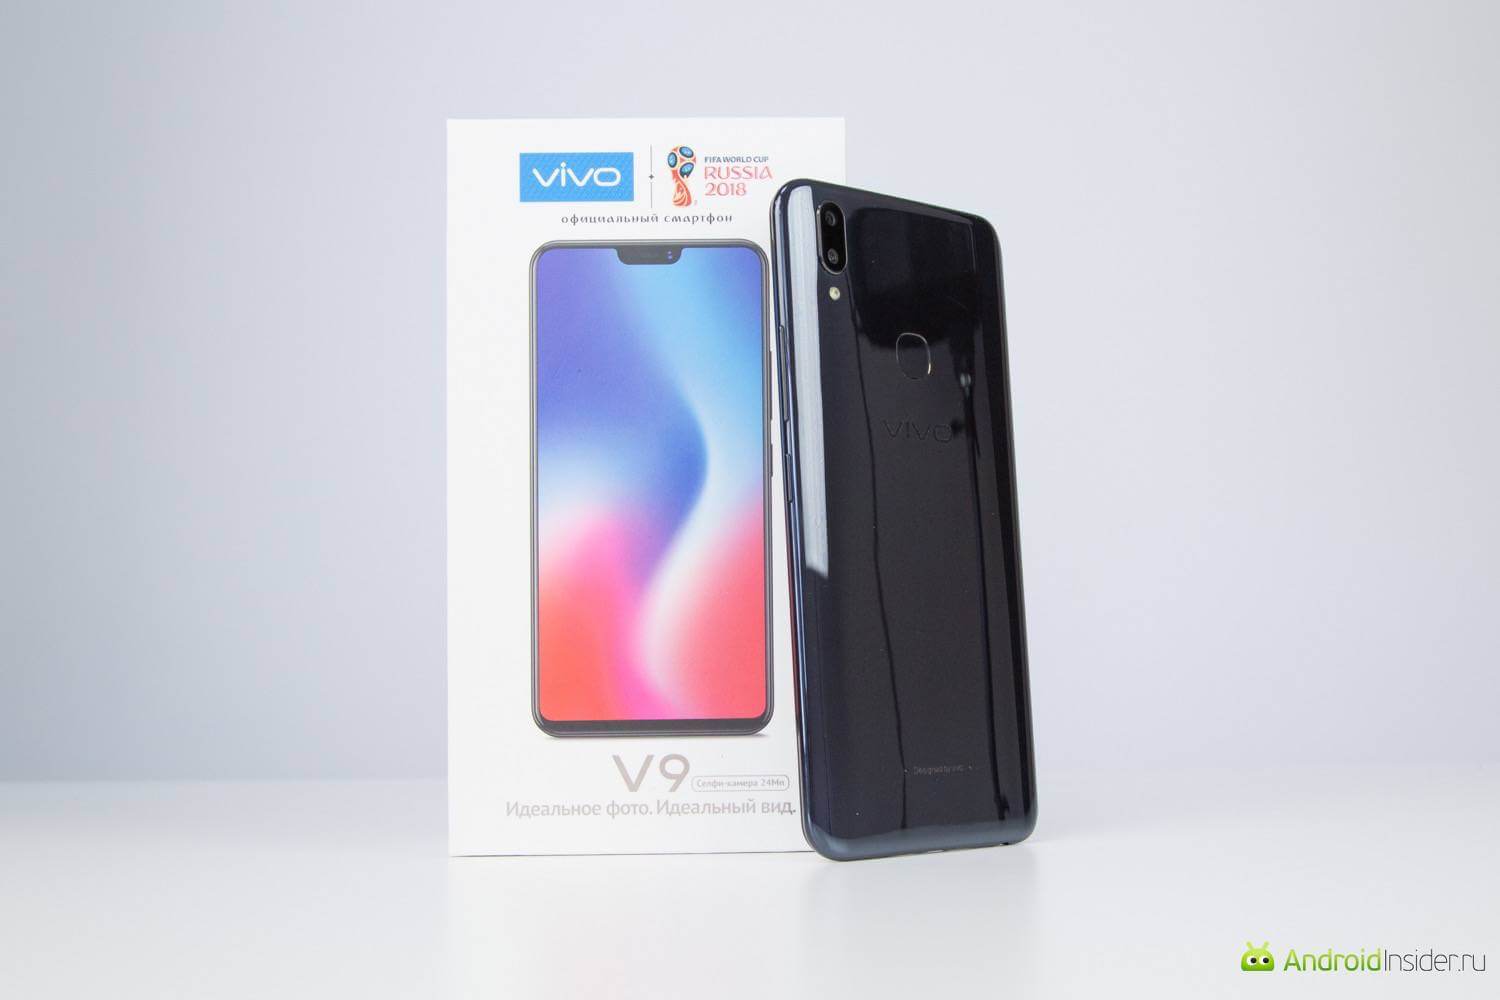 Vivo V9 — еще один смартфон в популярном сегменте. Производительность и железо. Фото.